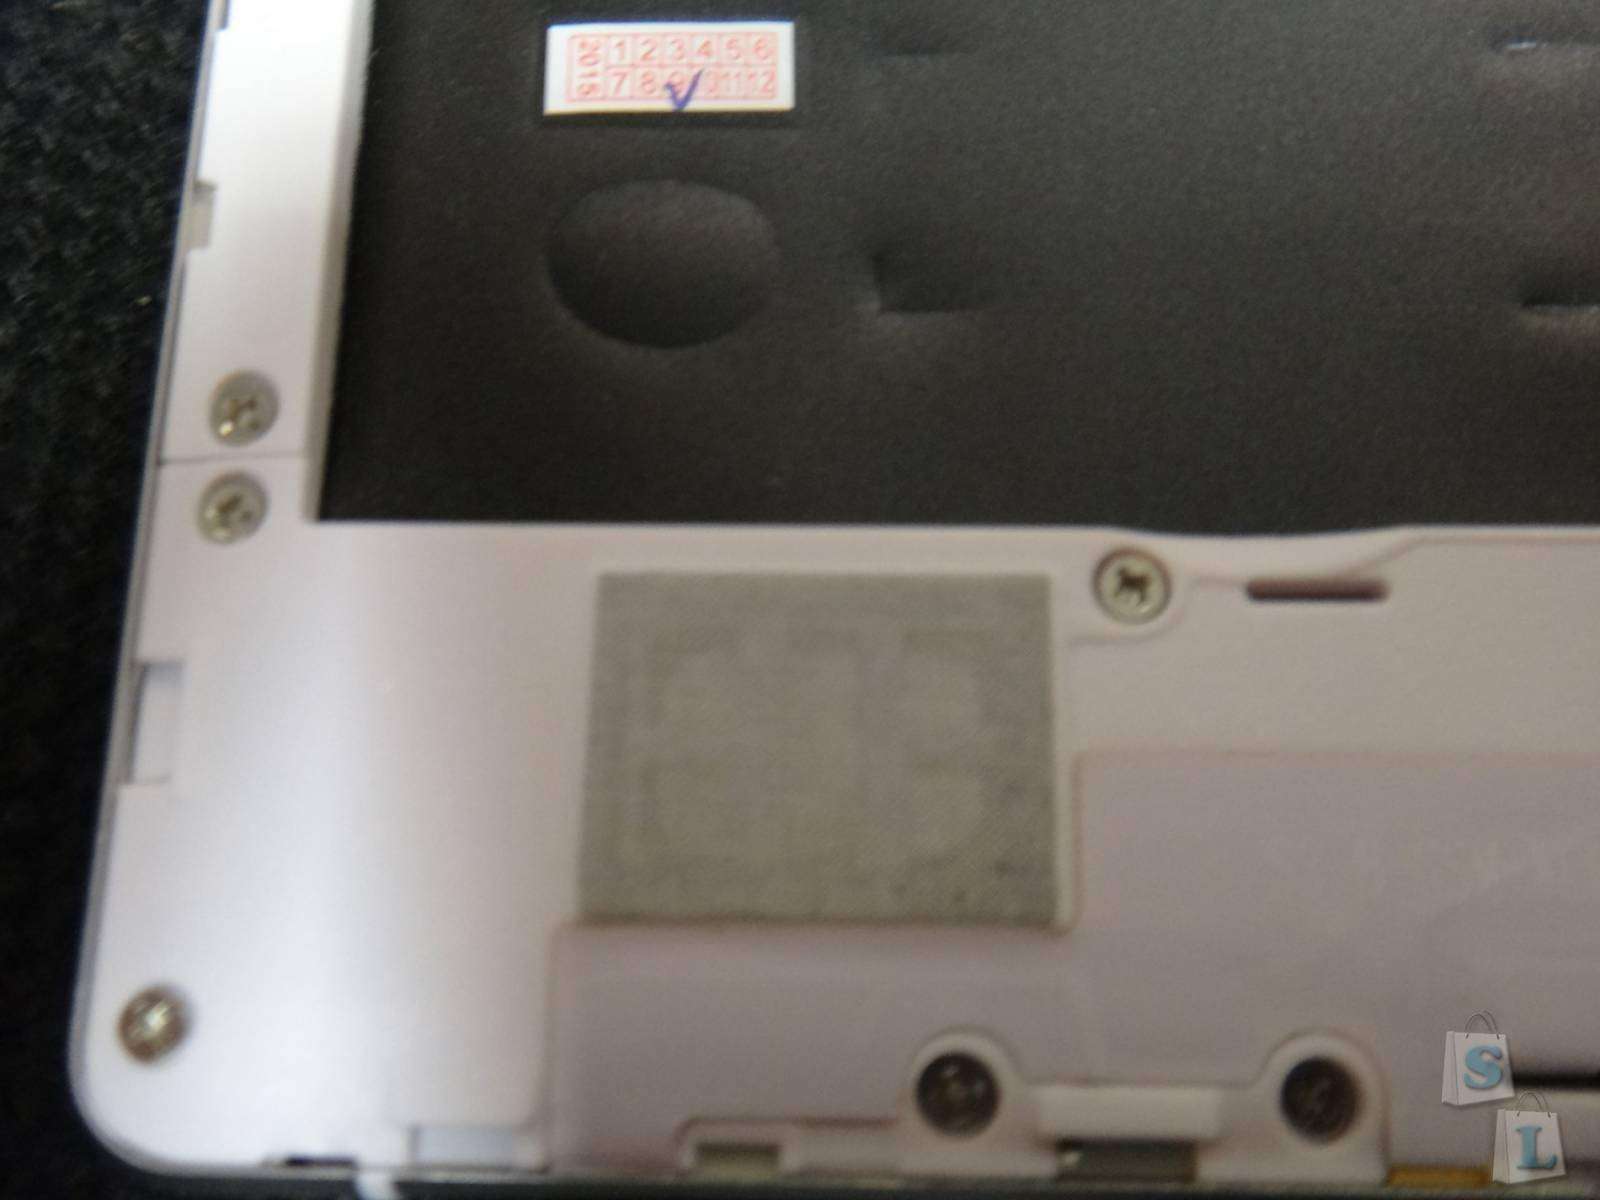 CooliCool: UMI FAIR MHAUMFR красивый бюджетник со сканером отпечатка пальца